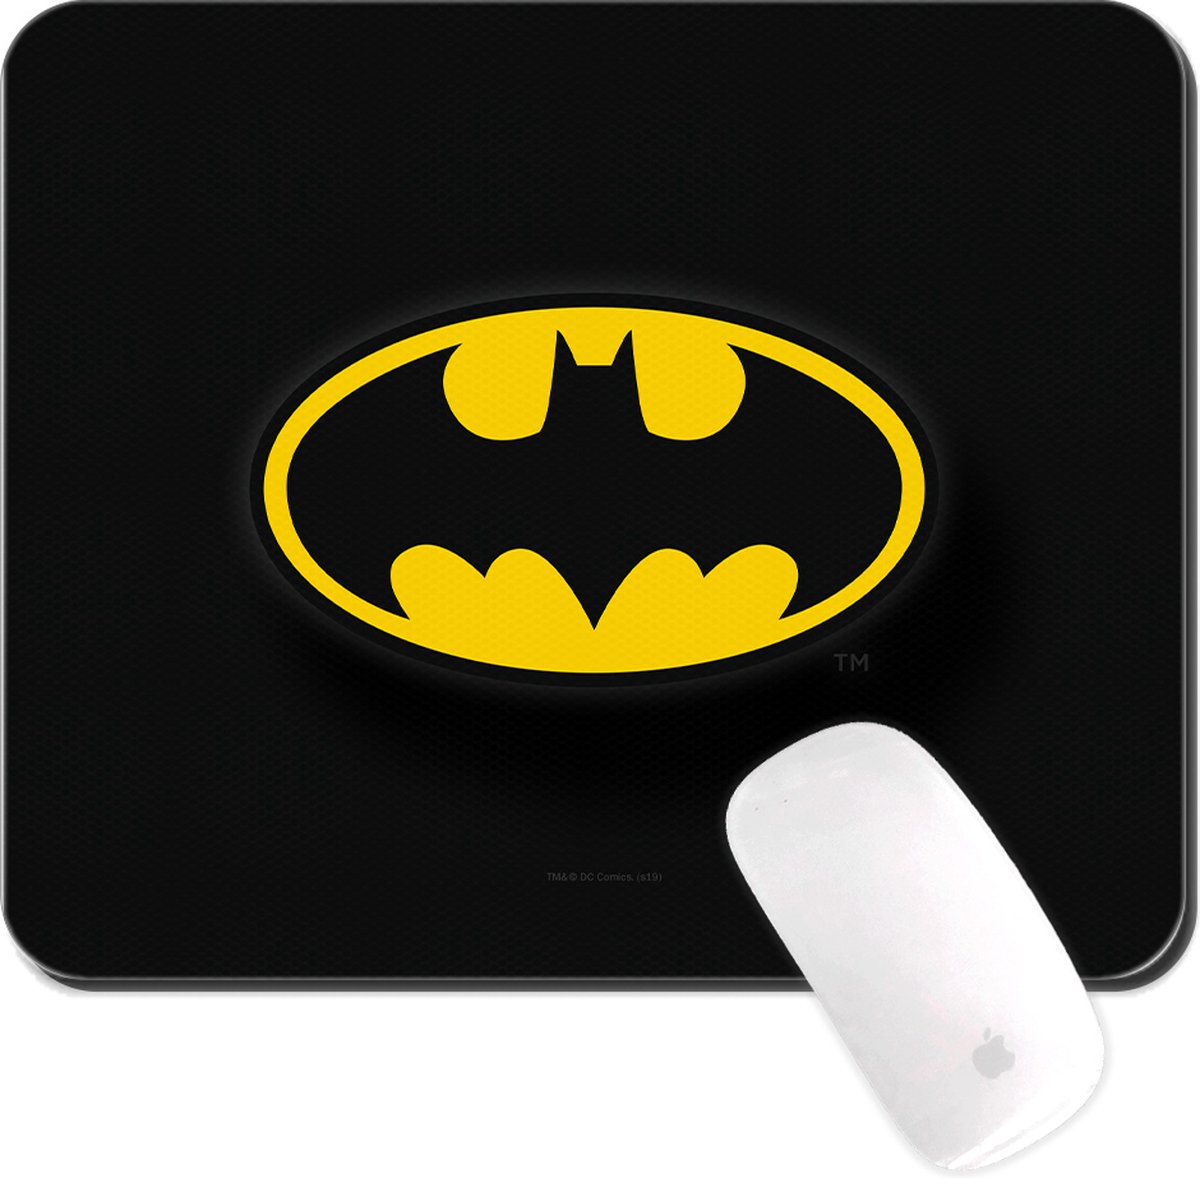 Batman logo - Muismat 22x18cm 3mm dik